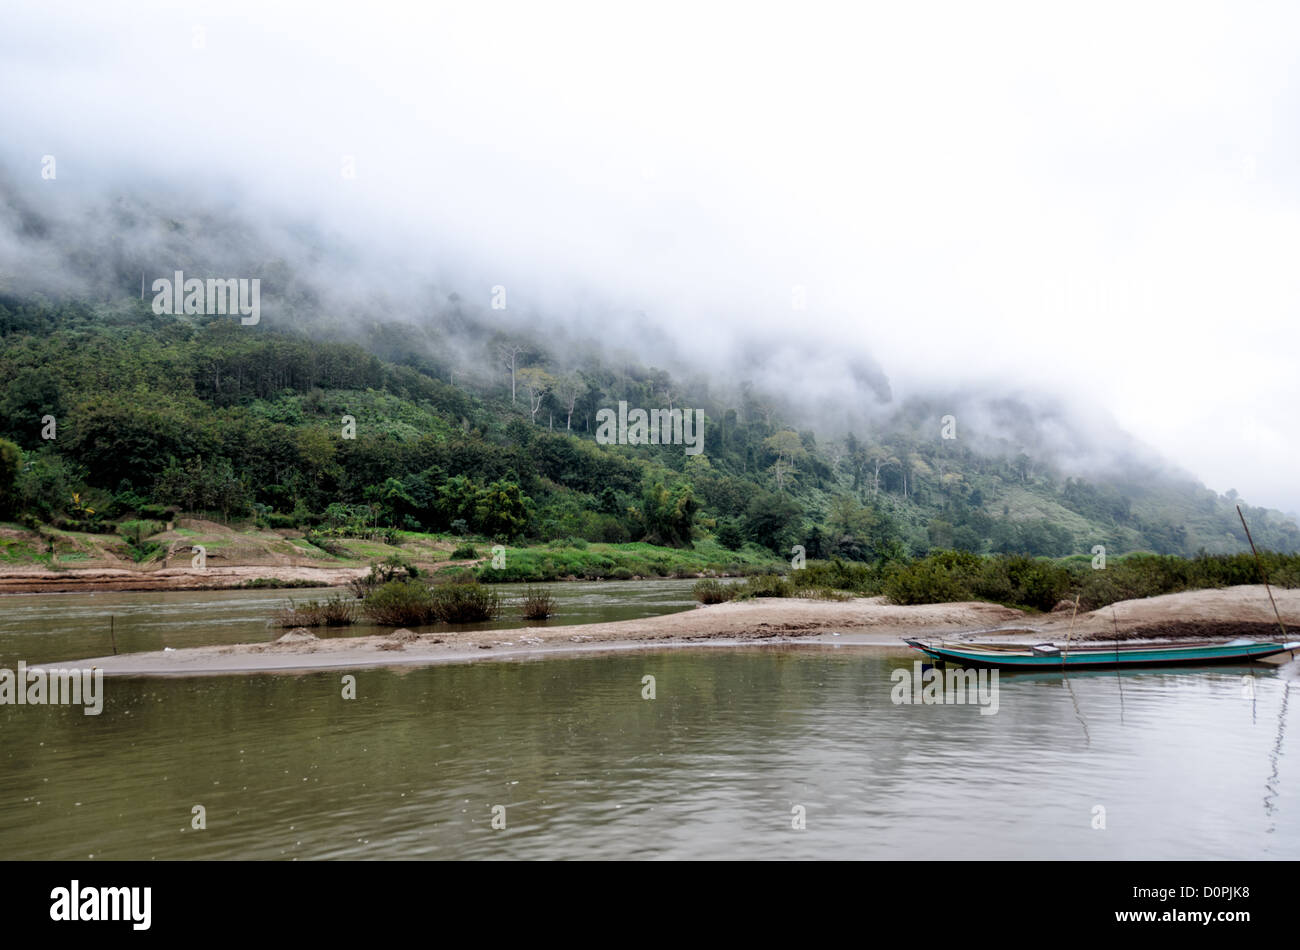 NONG KHIAW, Laos - Nebel roll Verkleidung die steilen Kalkstein Karst am Ufer des Flusses Nam Ou (Organisationseinheit) in Nong Khiaw in norther Laos. Sanbanks in der Mitte des Flusses bilden kleine Sand Inseln und geschützte Liegeplätze. Stockfoto